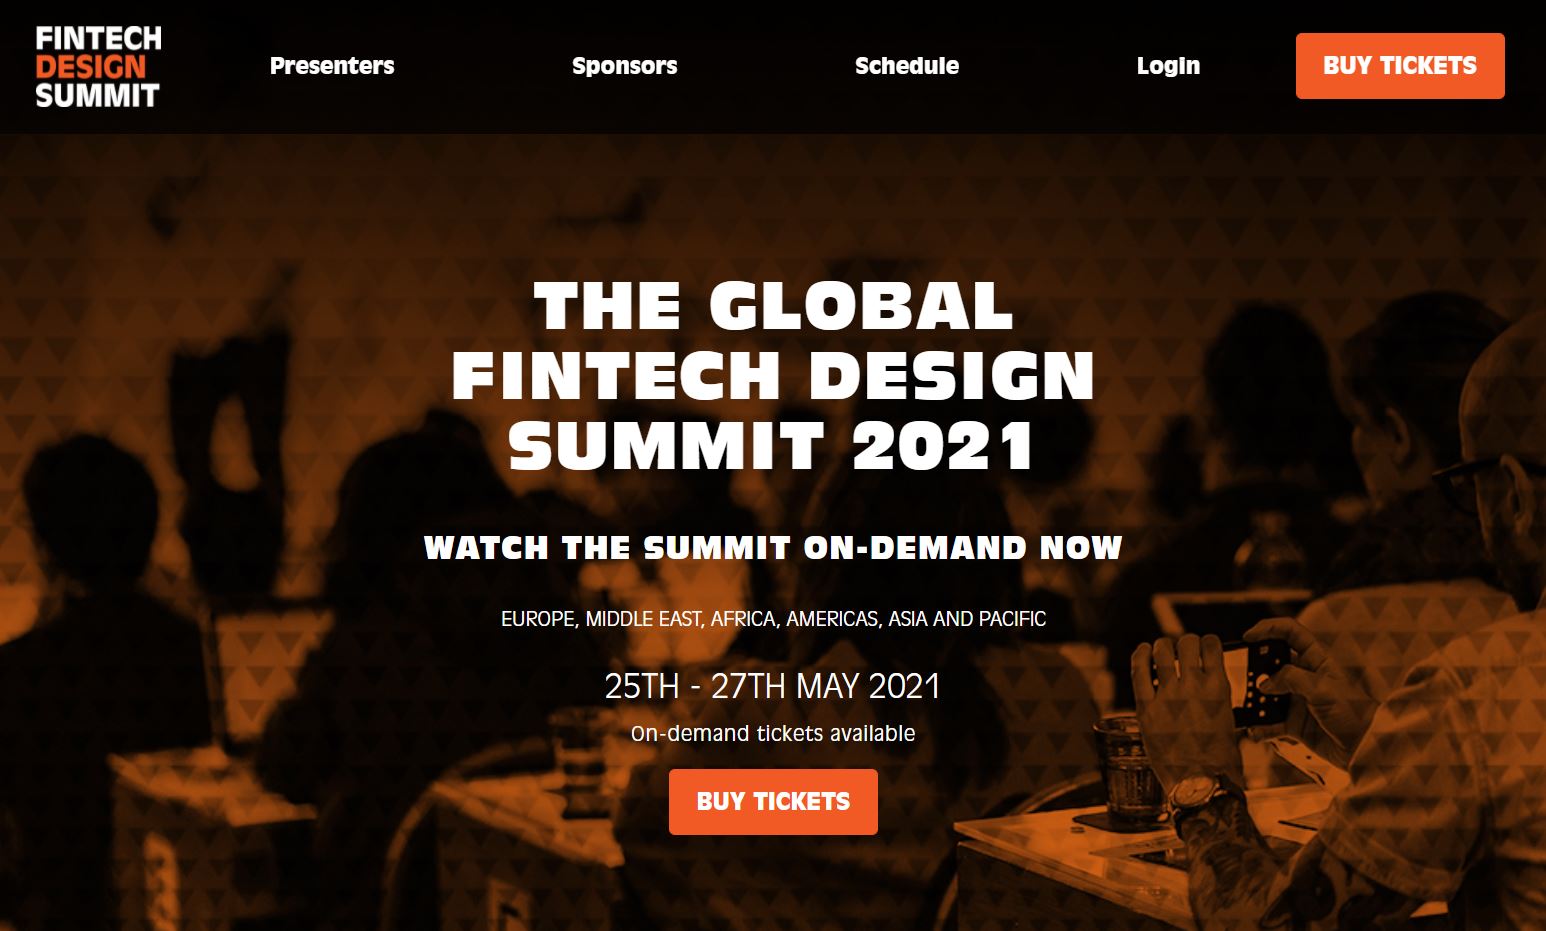 Fintech Design Summit